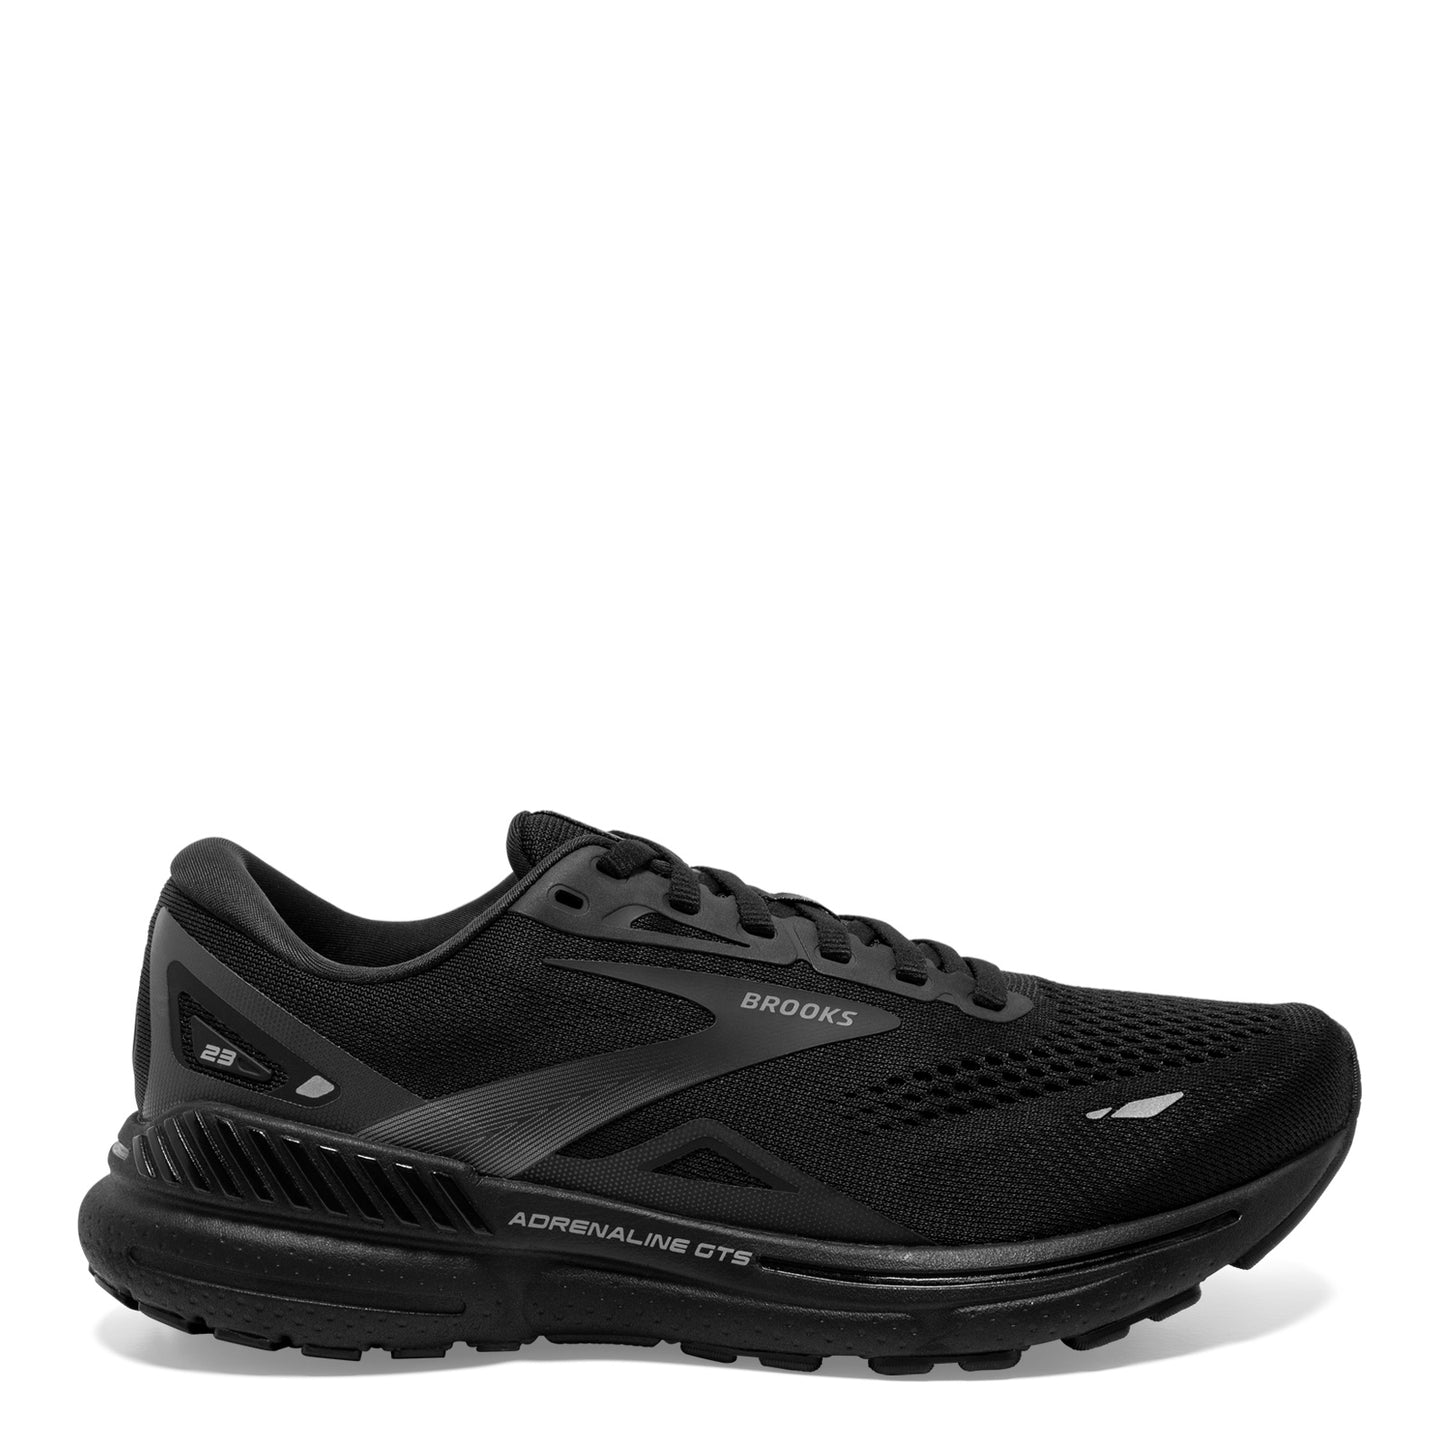 Peltz Shoes  Men's Brooks Adrenaline GTS 23 Running Shoe - Wide Width Black/Black/Ebony 110391 2E 020